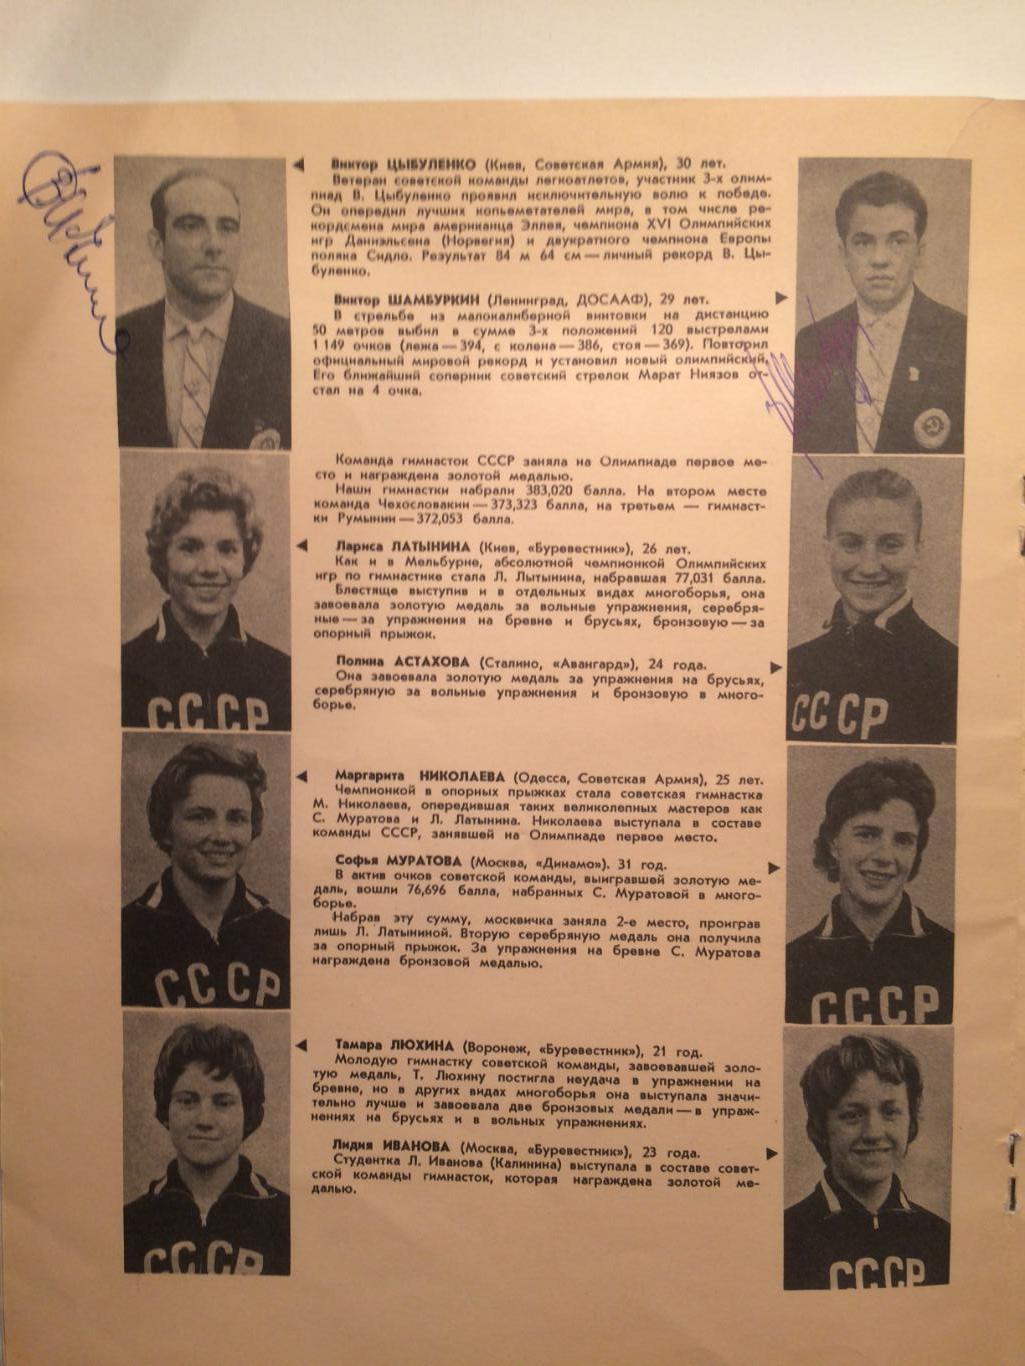 Спортсмены СССР на Олимпиаде в Риме 1960.Чемпионы и призеры 17 олимпийских игр 2